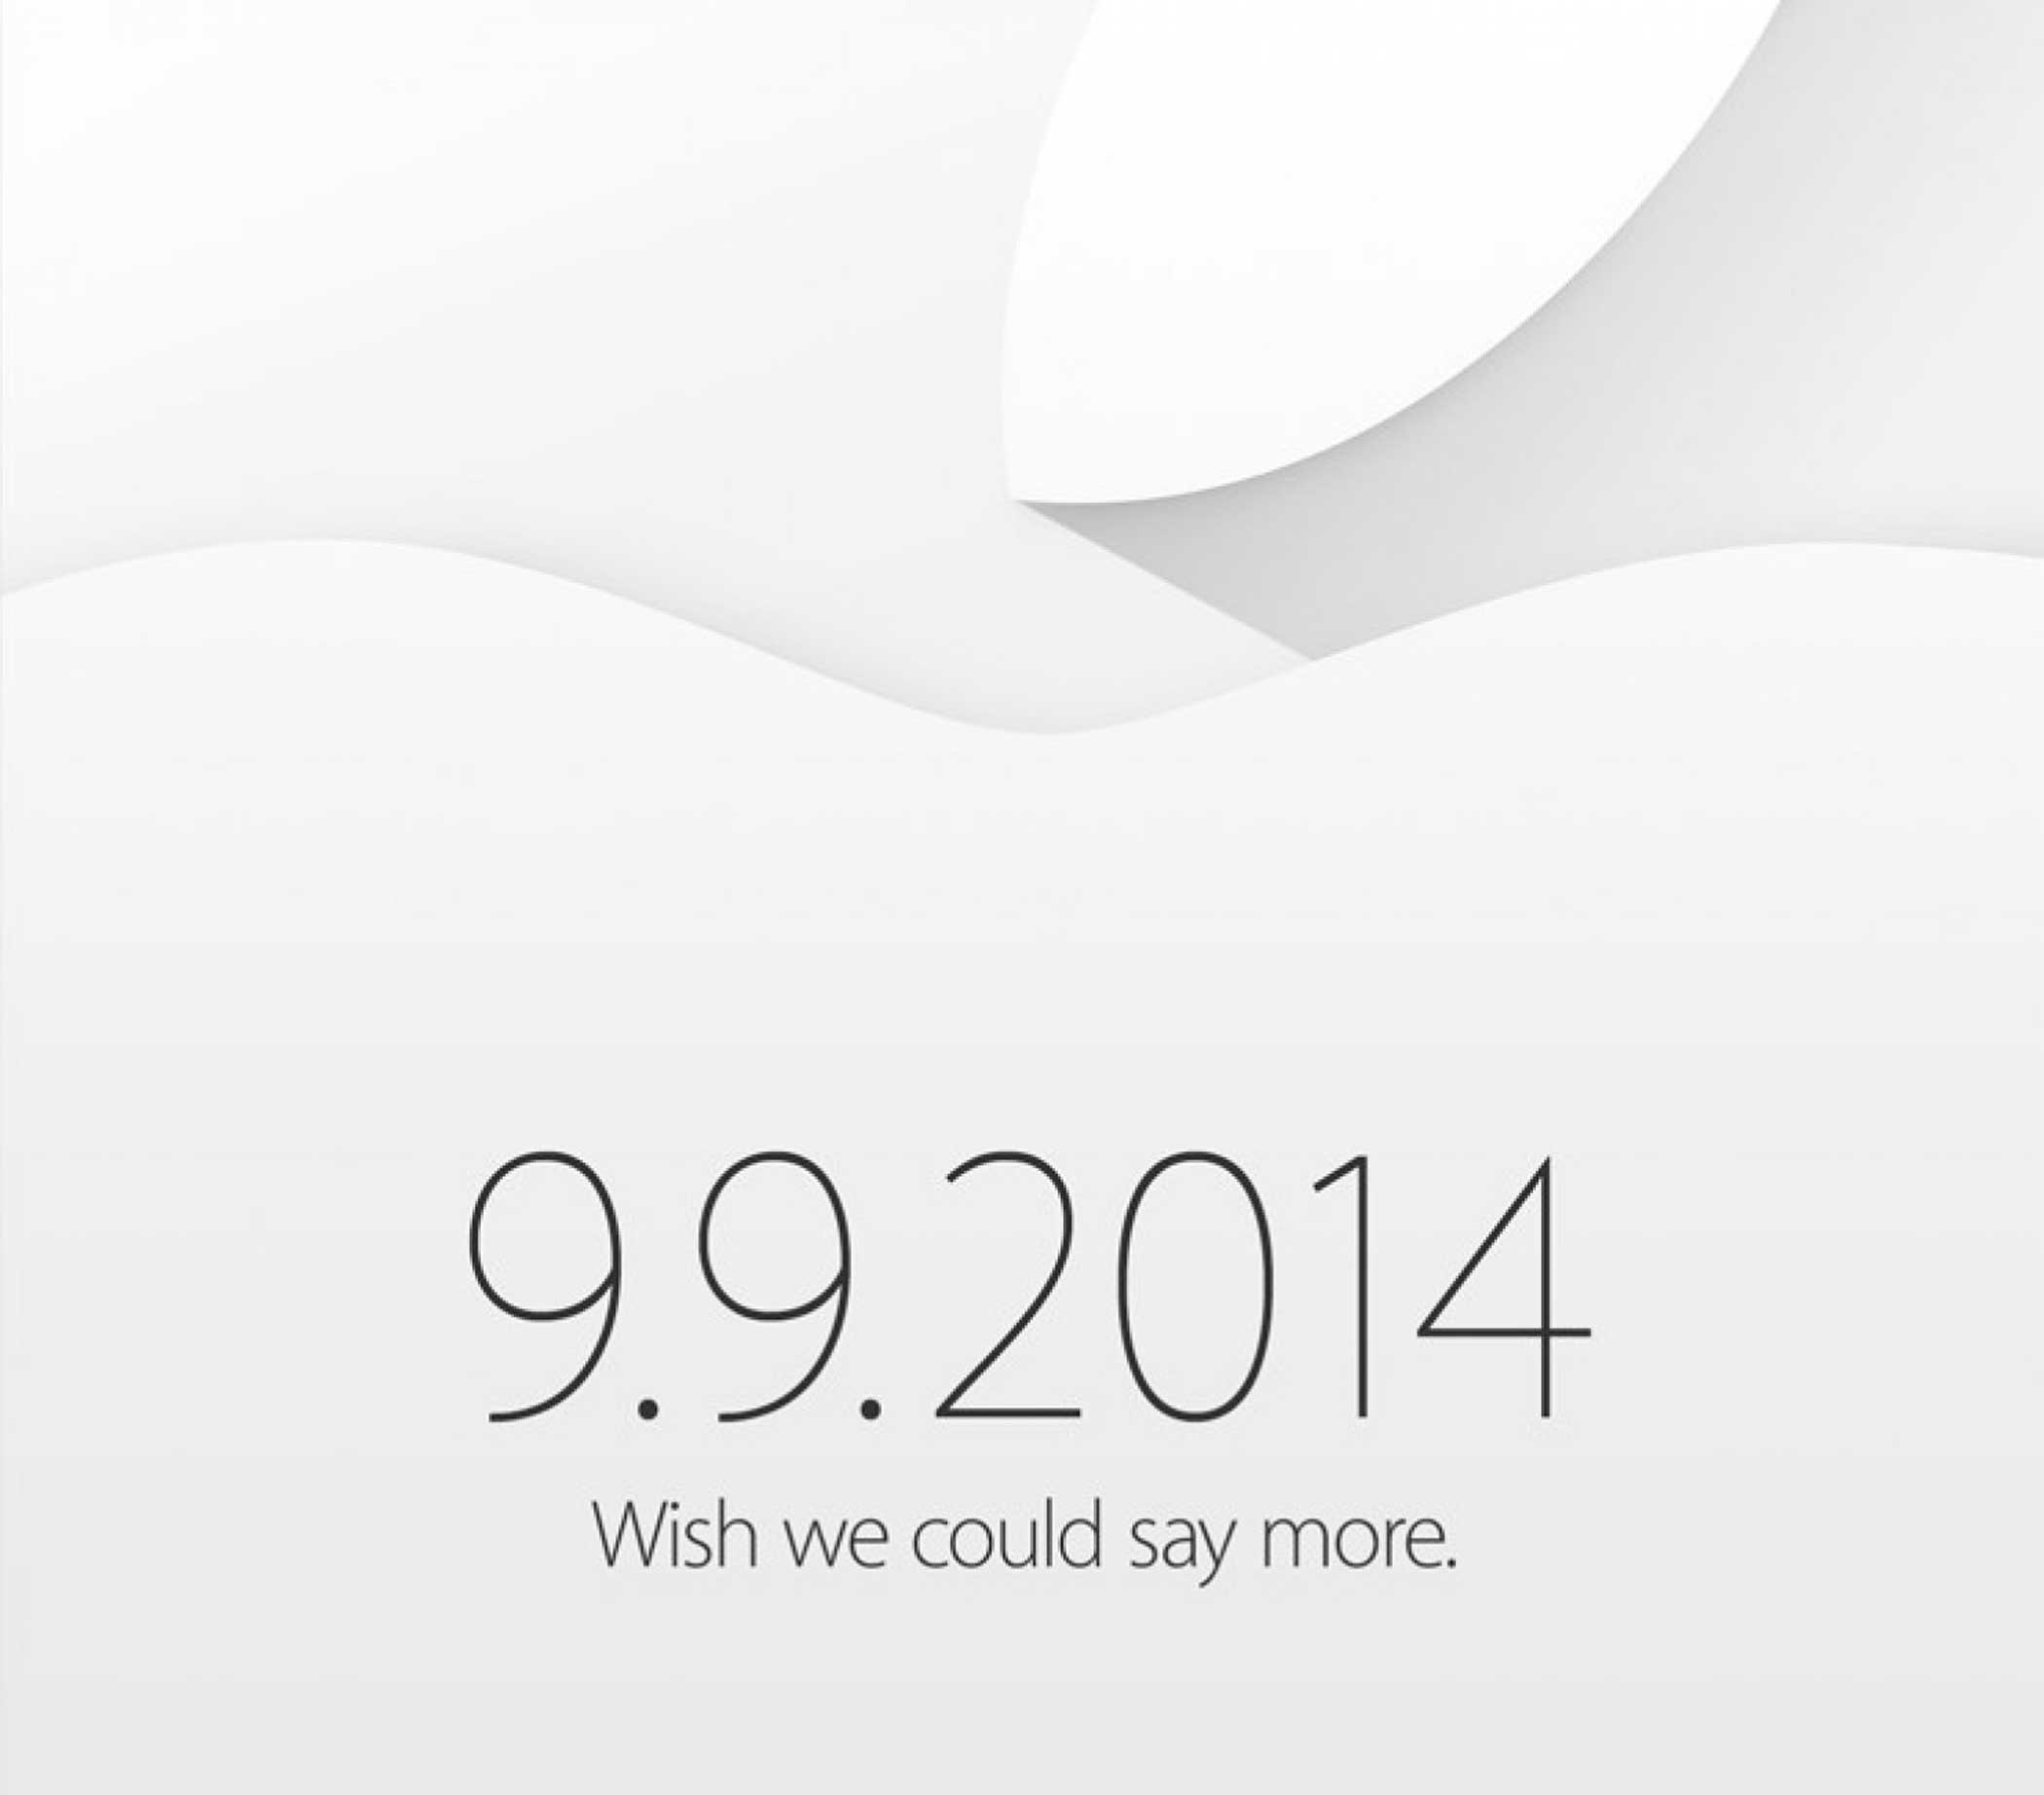 iPhone 6 &amp; iPhone 6 Plus &amp; iOS 8, September 2014